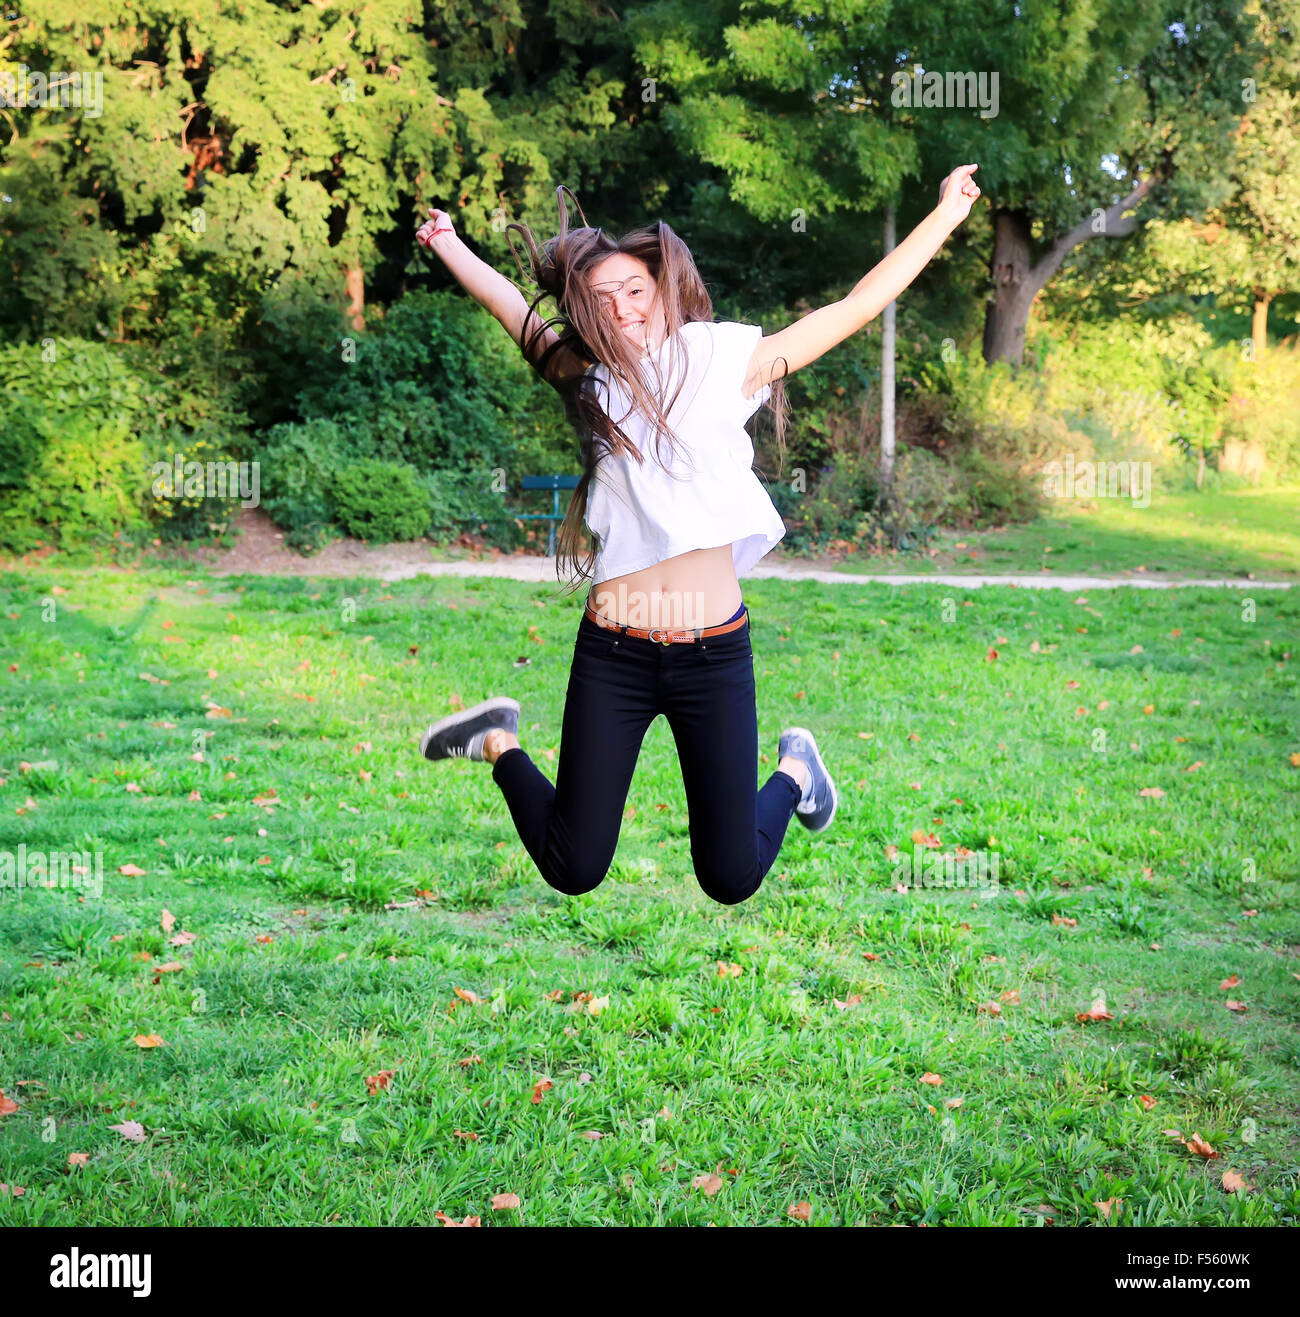 Schöne glückliche junge Teen Mädchen springen hoch im park Stockfoto